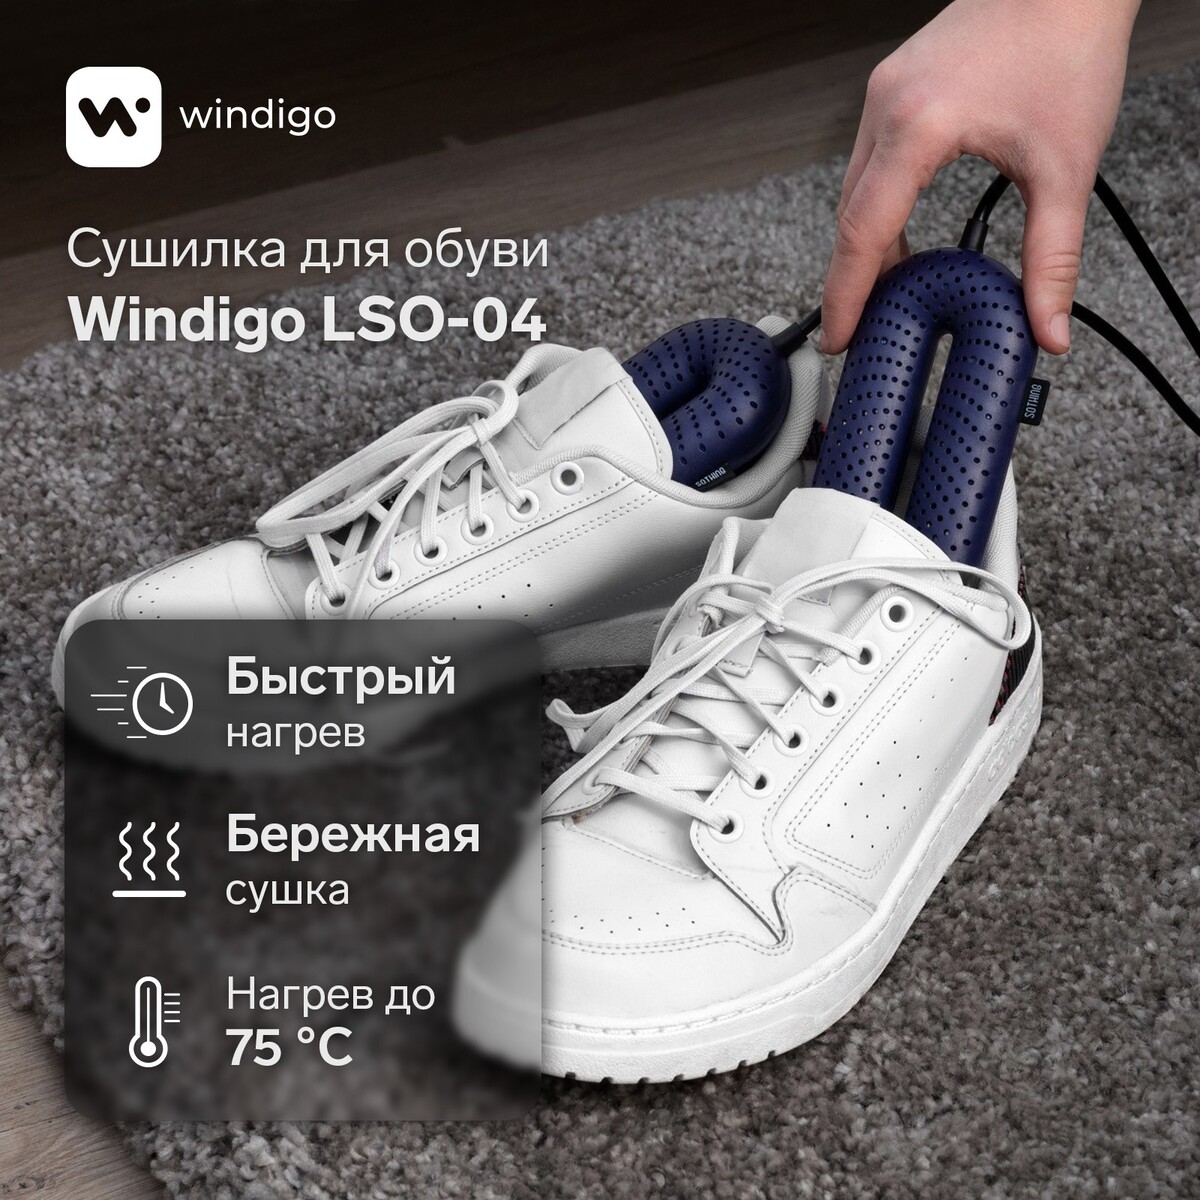 Сушилка для обуви windigo lso-04, 17 см, 20 вт, индикатор, синяя сушилка для обуви эсо 9 220 9 вт 14 см синяя